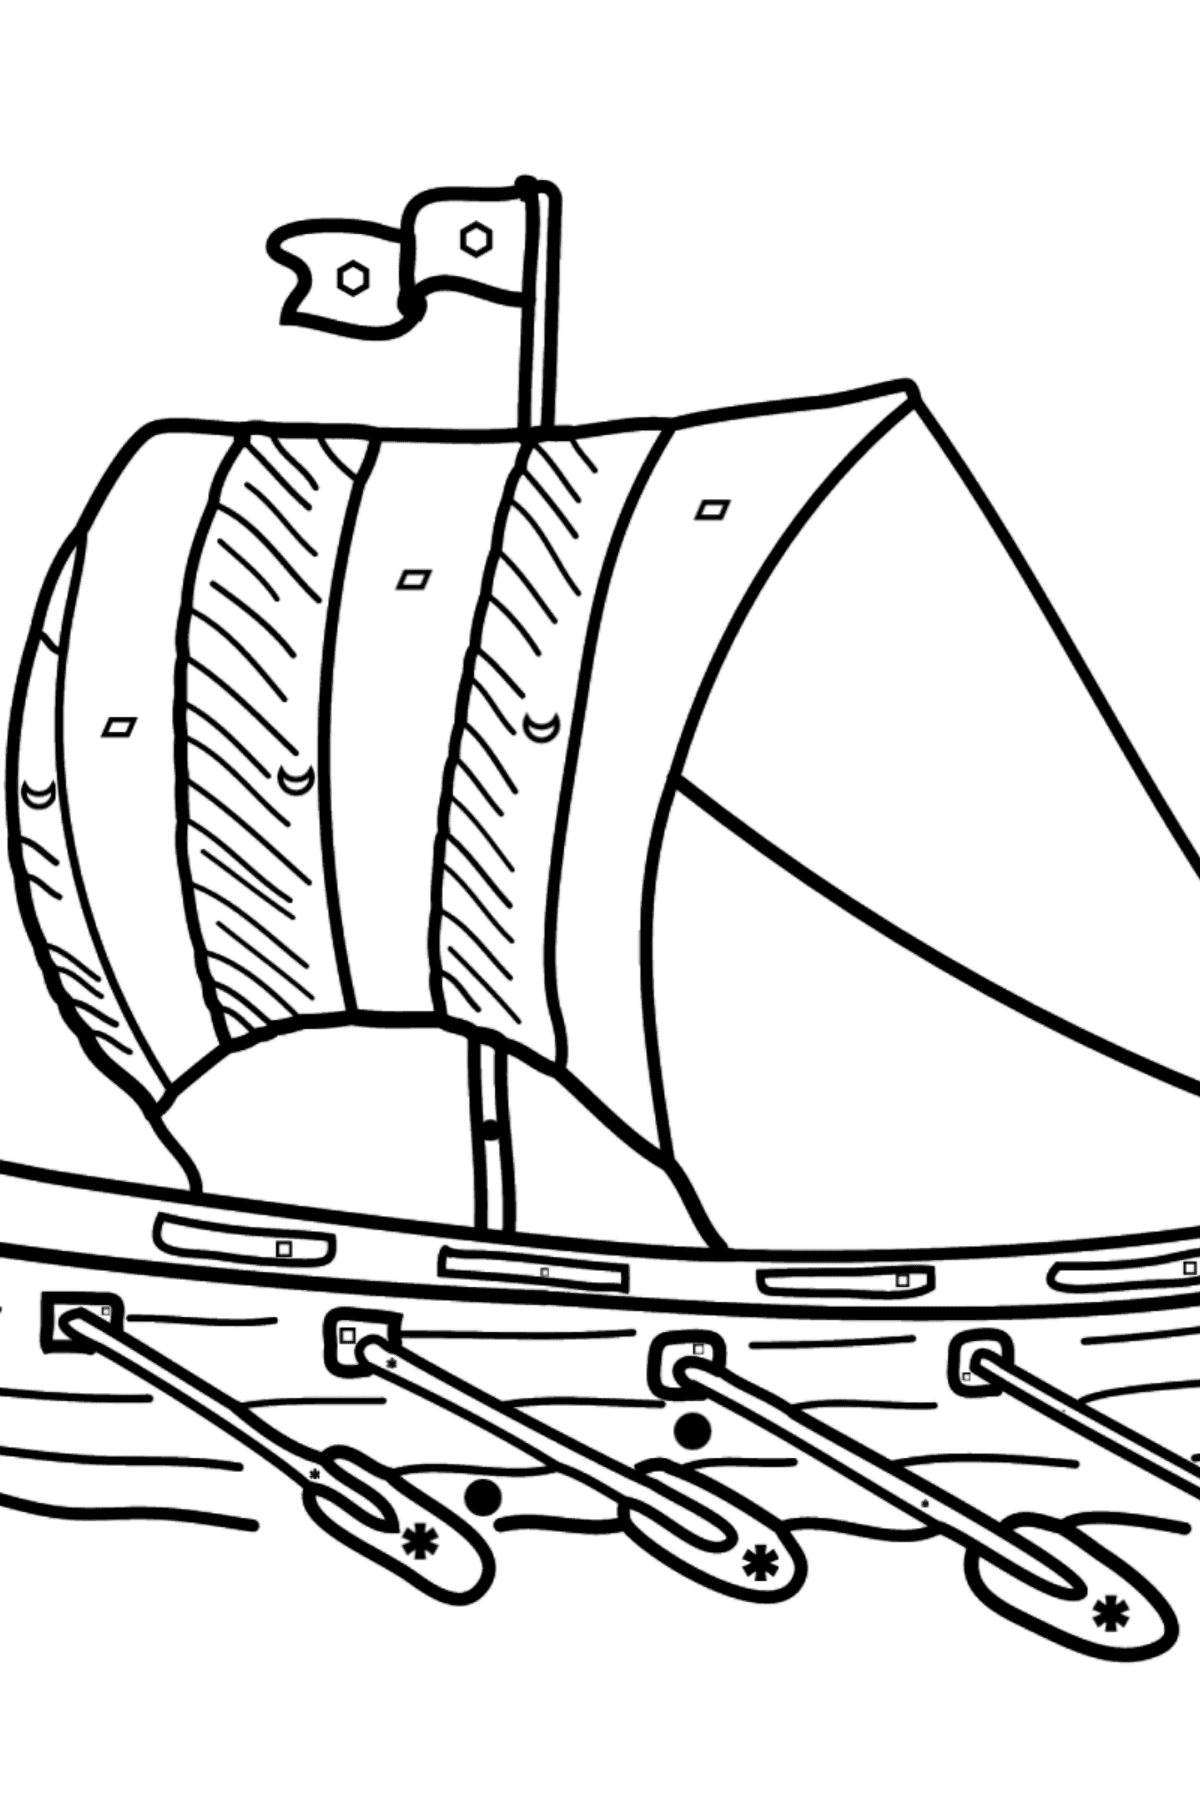 Tegning til fargelegging vakker båt - Fargelegge etter symboler og geometriske former for barn